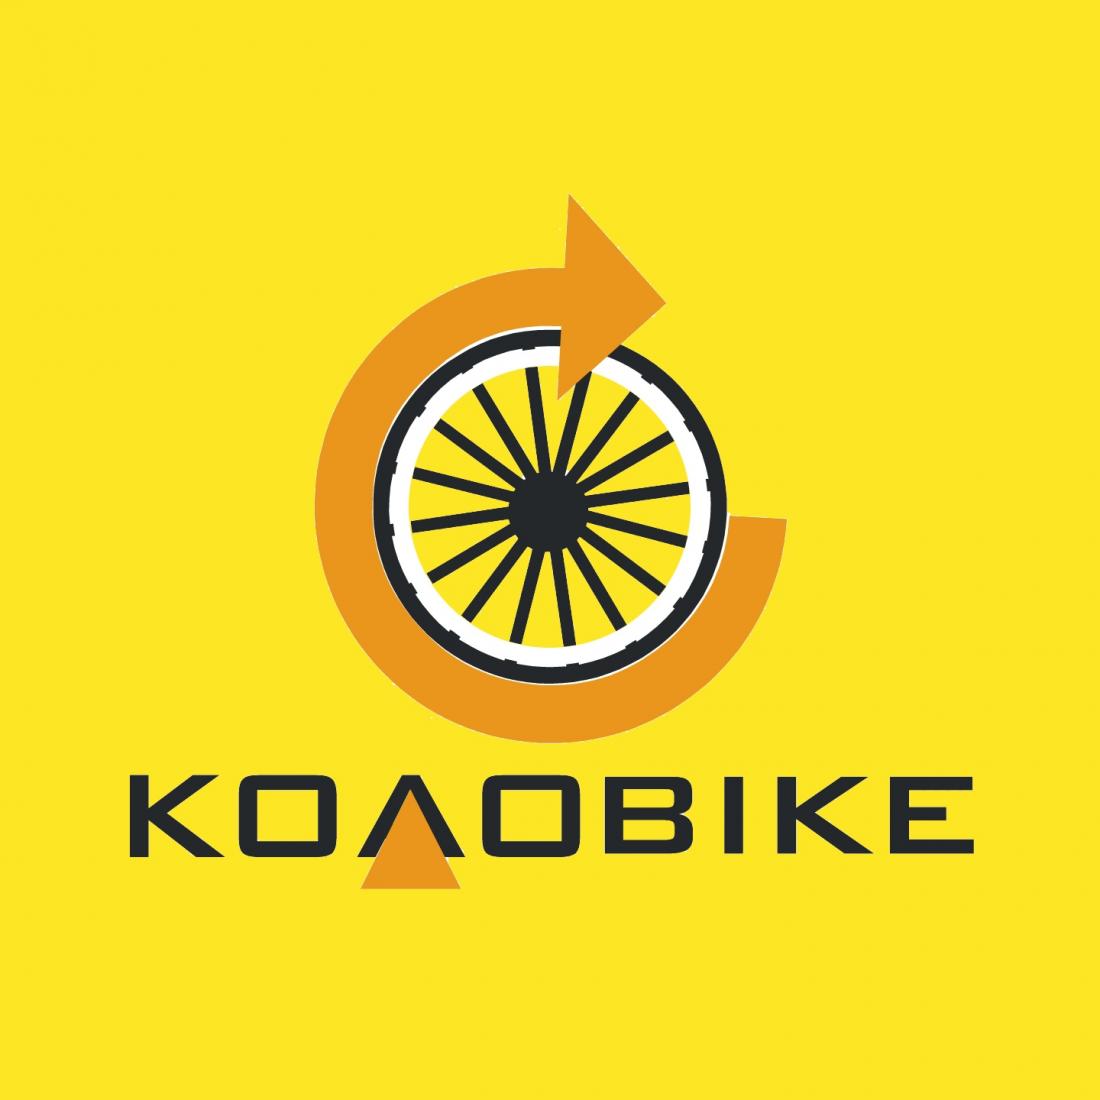 Бесплатный старт и безлимитная аренда велосипеда на 30 дней за 2,30 р/сутки от шеринга "Колоbike"